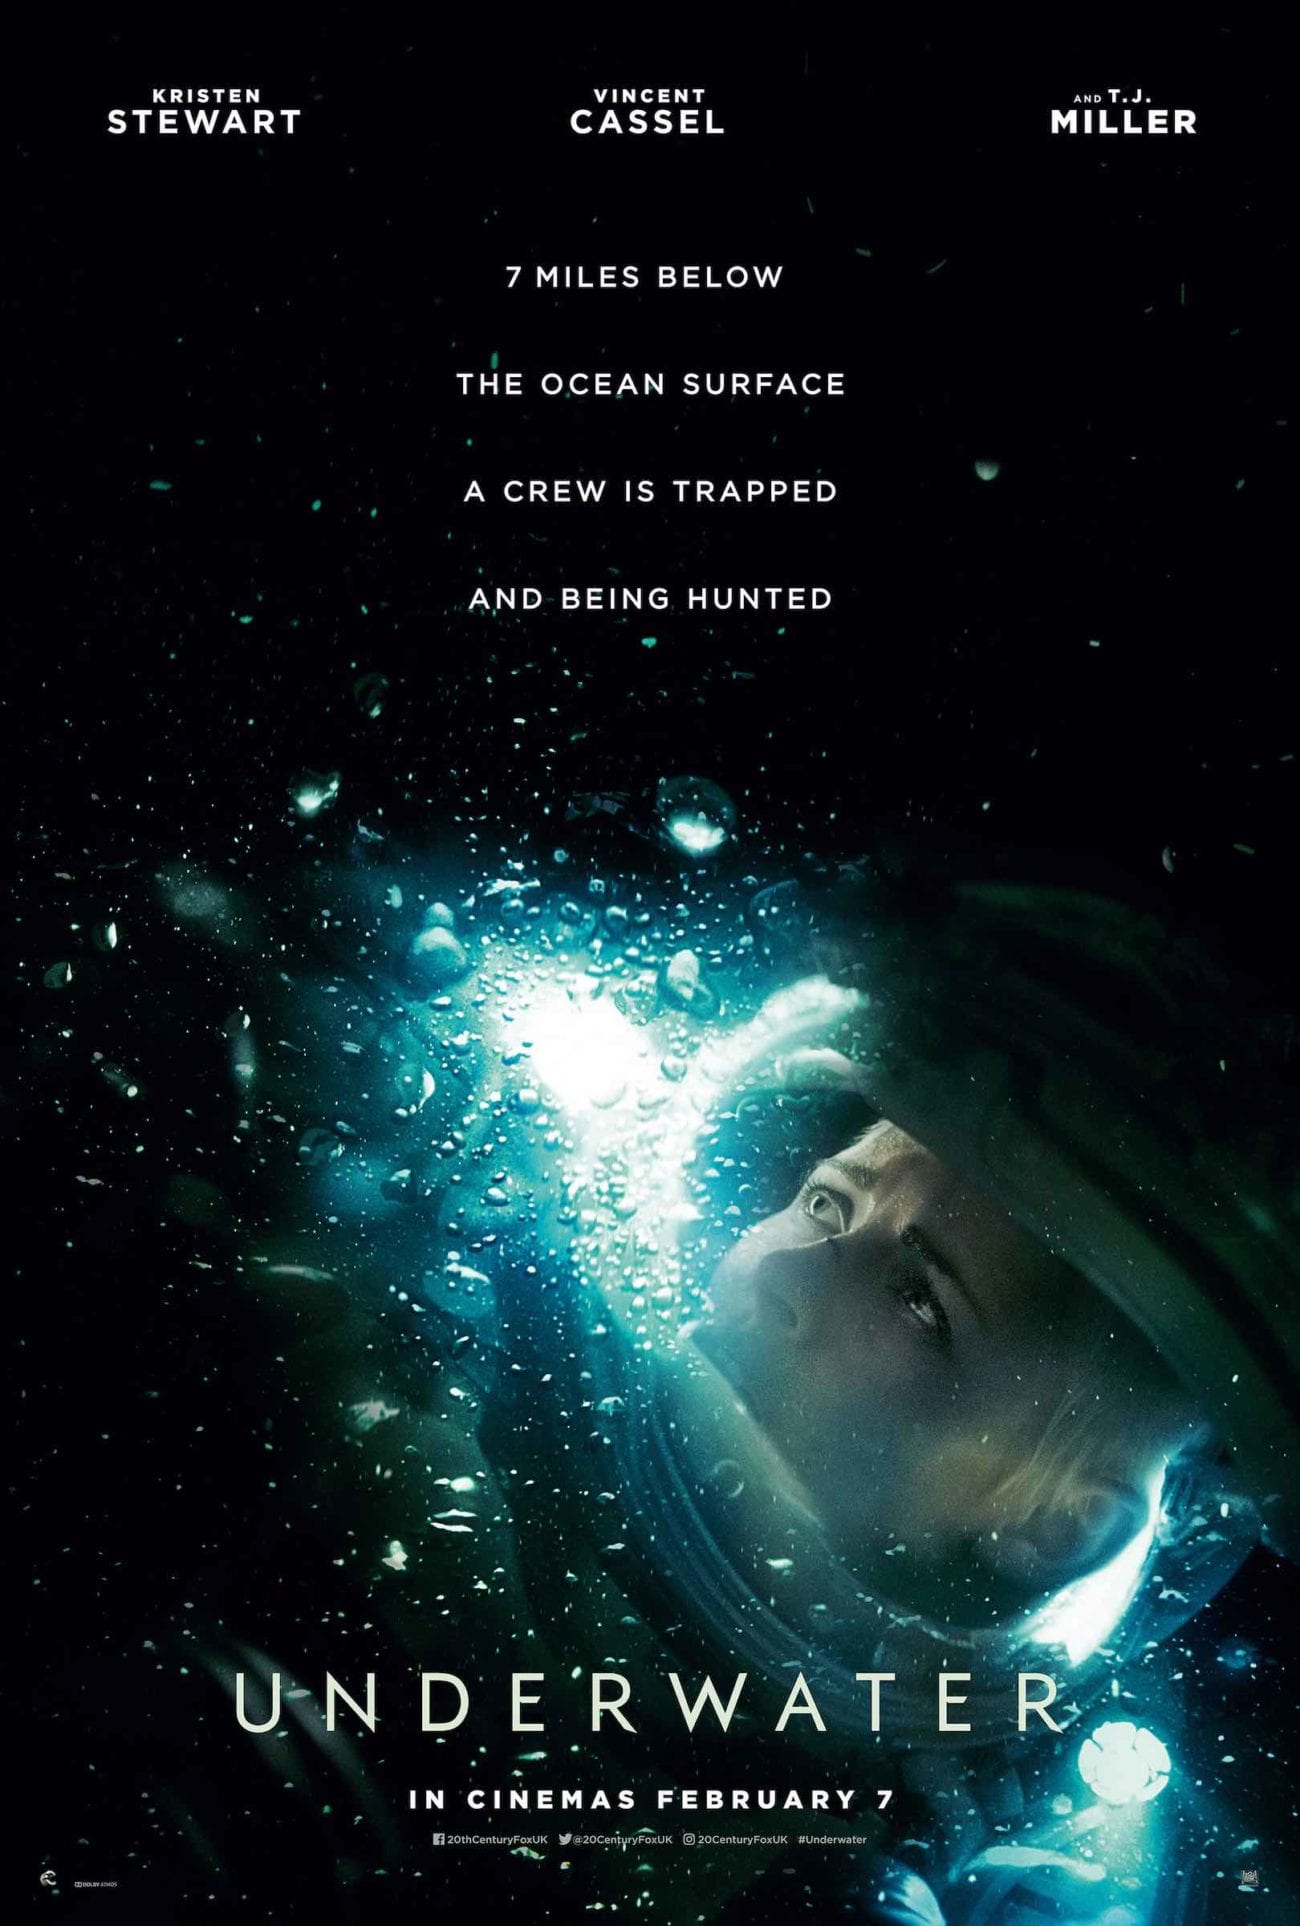 Underwater': All about the new Kristen Stewart movie – Film Daily